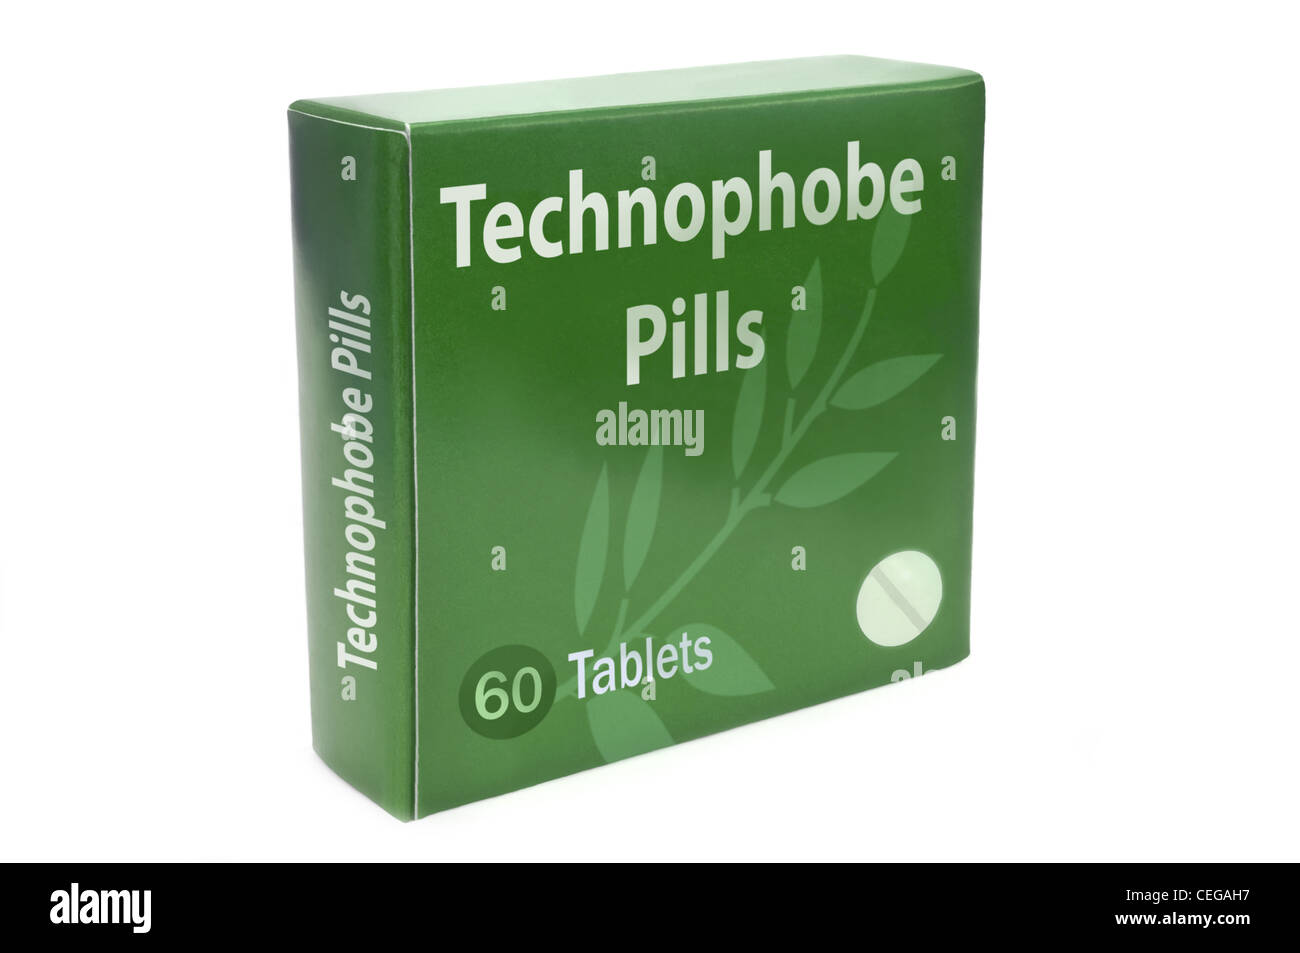 Nahaufnahme von ein grünes Feld mit den Worten "Technophobe Pillen" über weiß angeordnet. Stockfoto